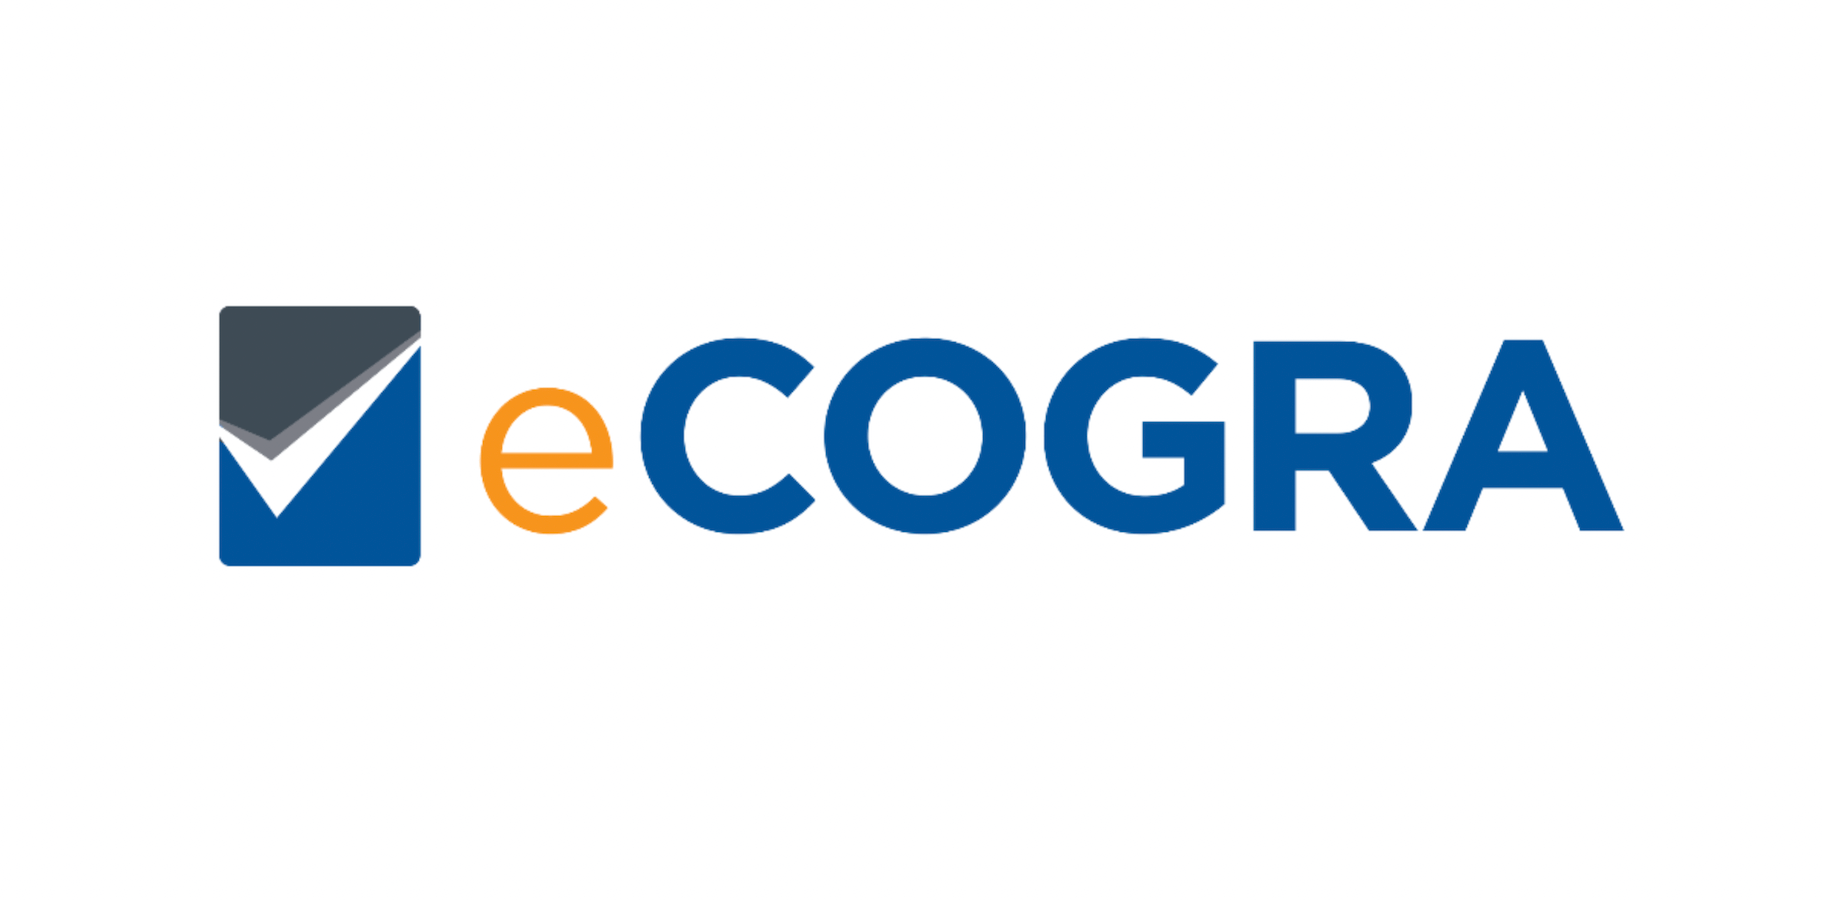 eCOGRA odświeża swoją markę i przesłanie